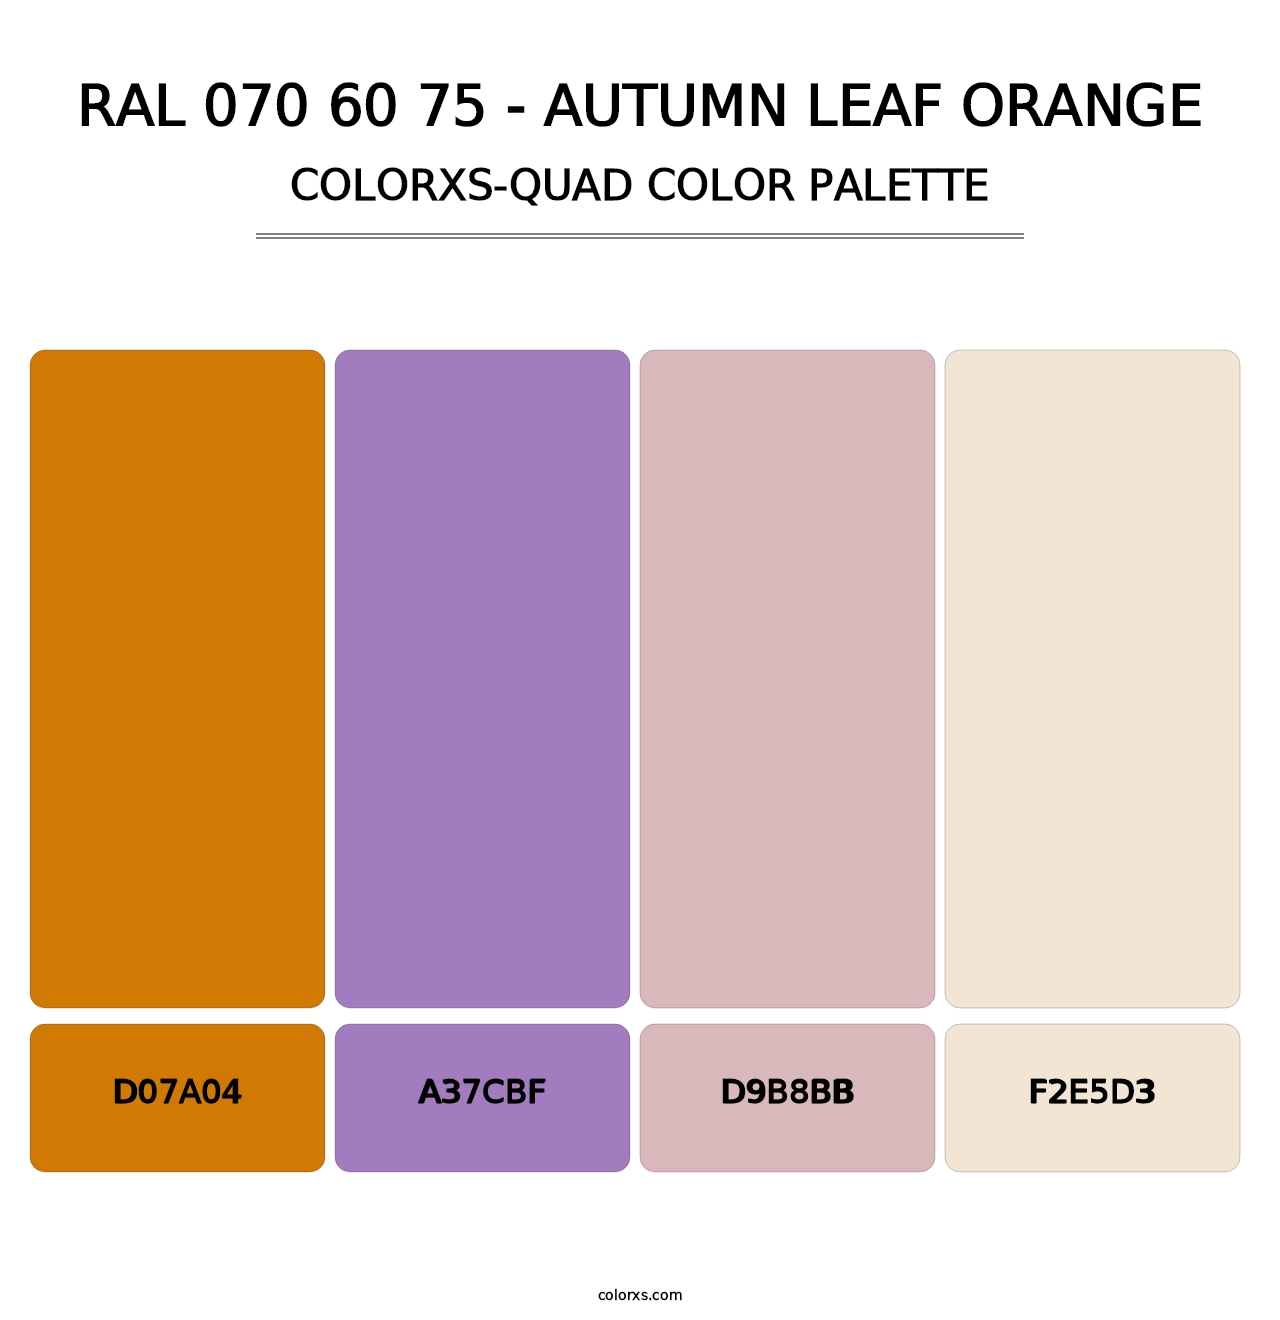 RAL 070 60 75 - Autumn Leaf Orange - Colorxs Quad Palette